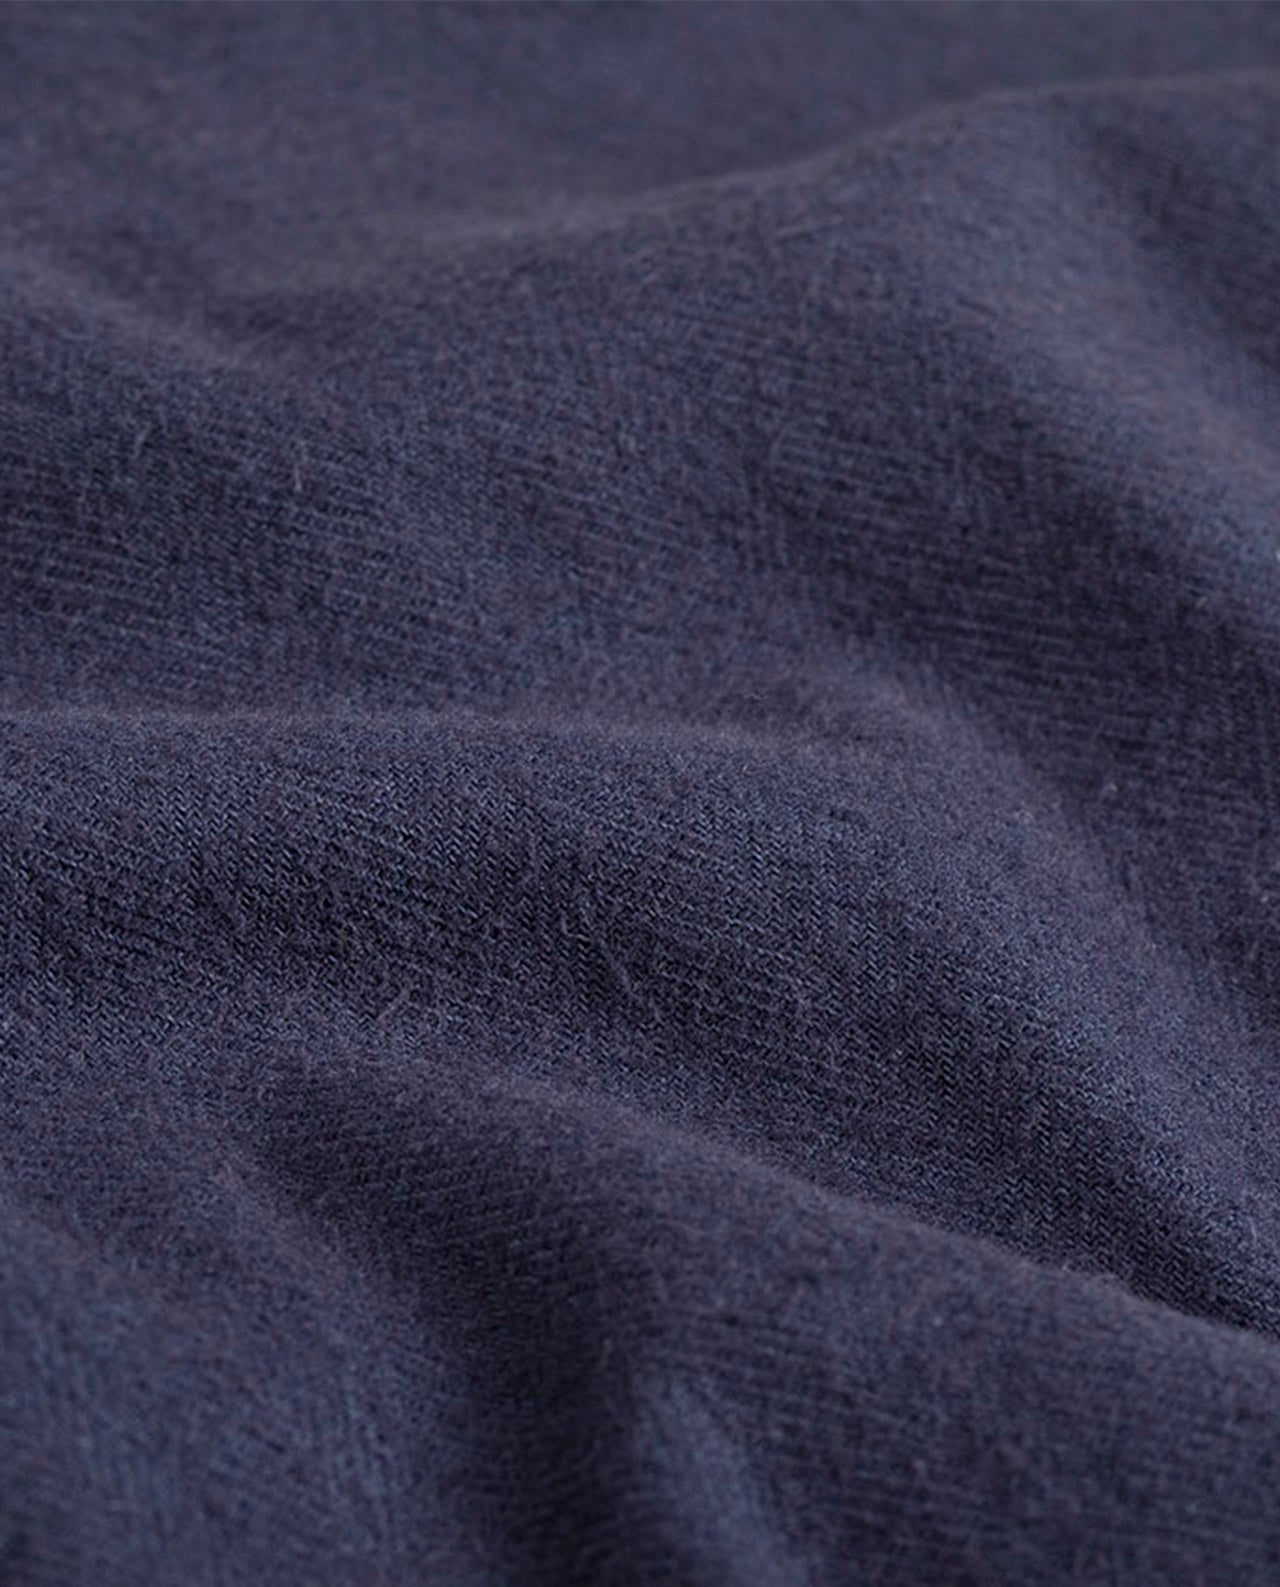 marché commun bask in the sun chemise homme éco-responsable bleu marine coton biologique naturel